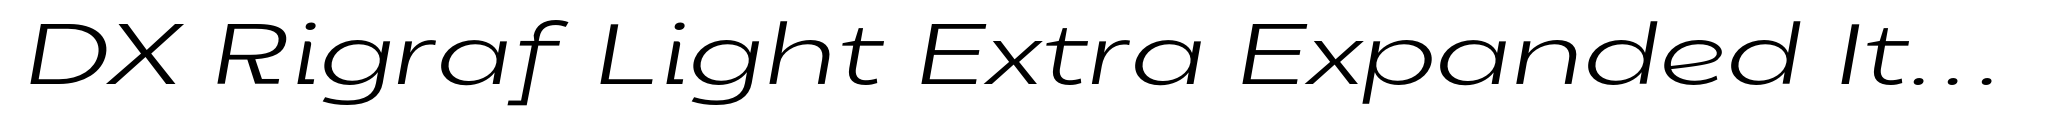 DX Rigraf Light Extra Expanded Italic image